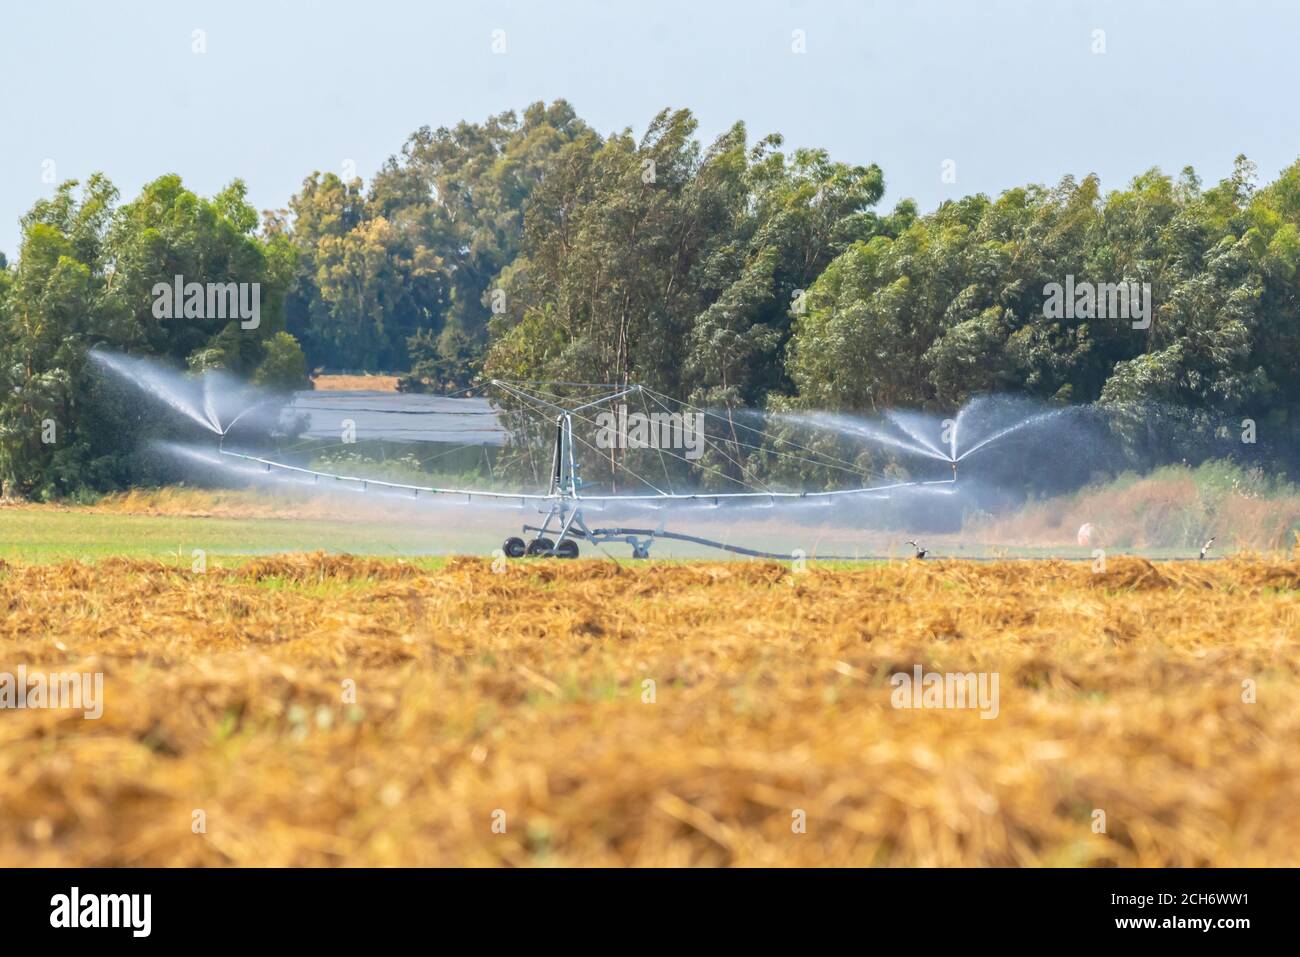 Gli sprinkler vengono utilizzati per irrigare giovani piantine in un campo agricolo. Fotografato in Israele Foto Stock